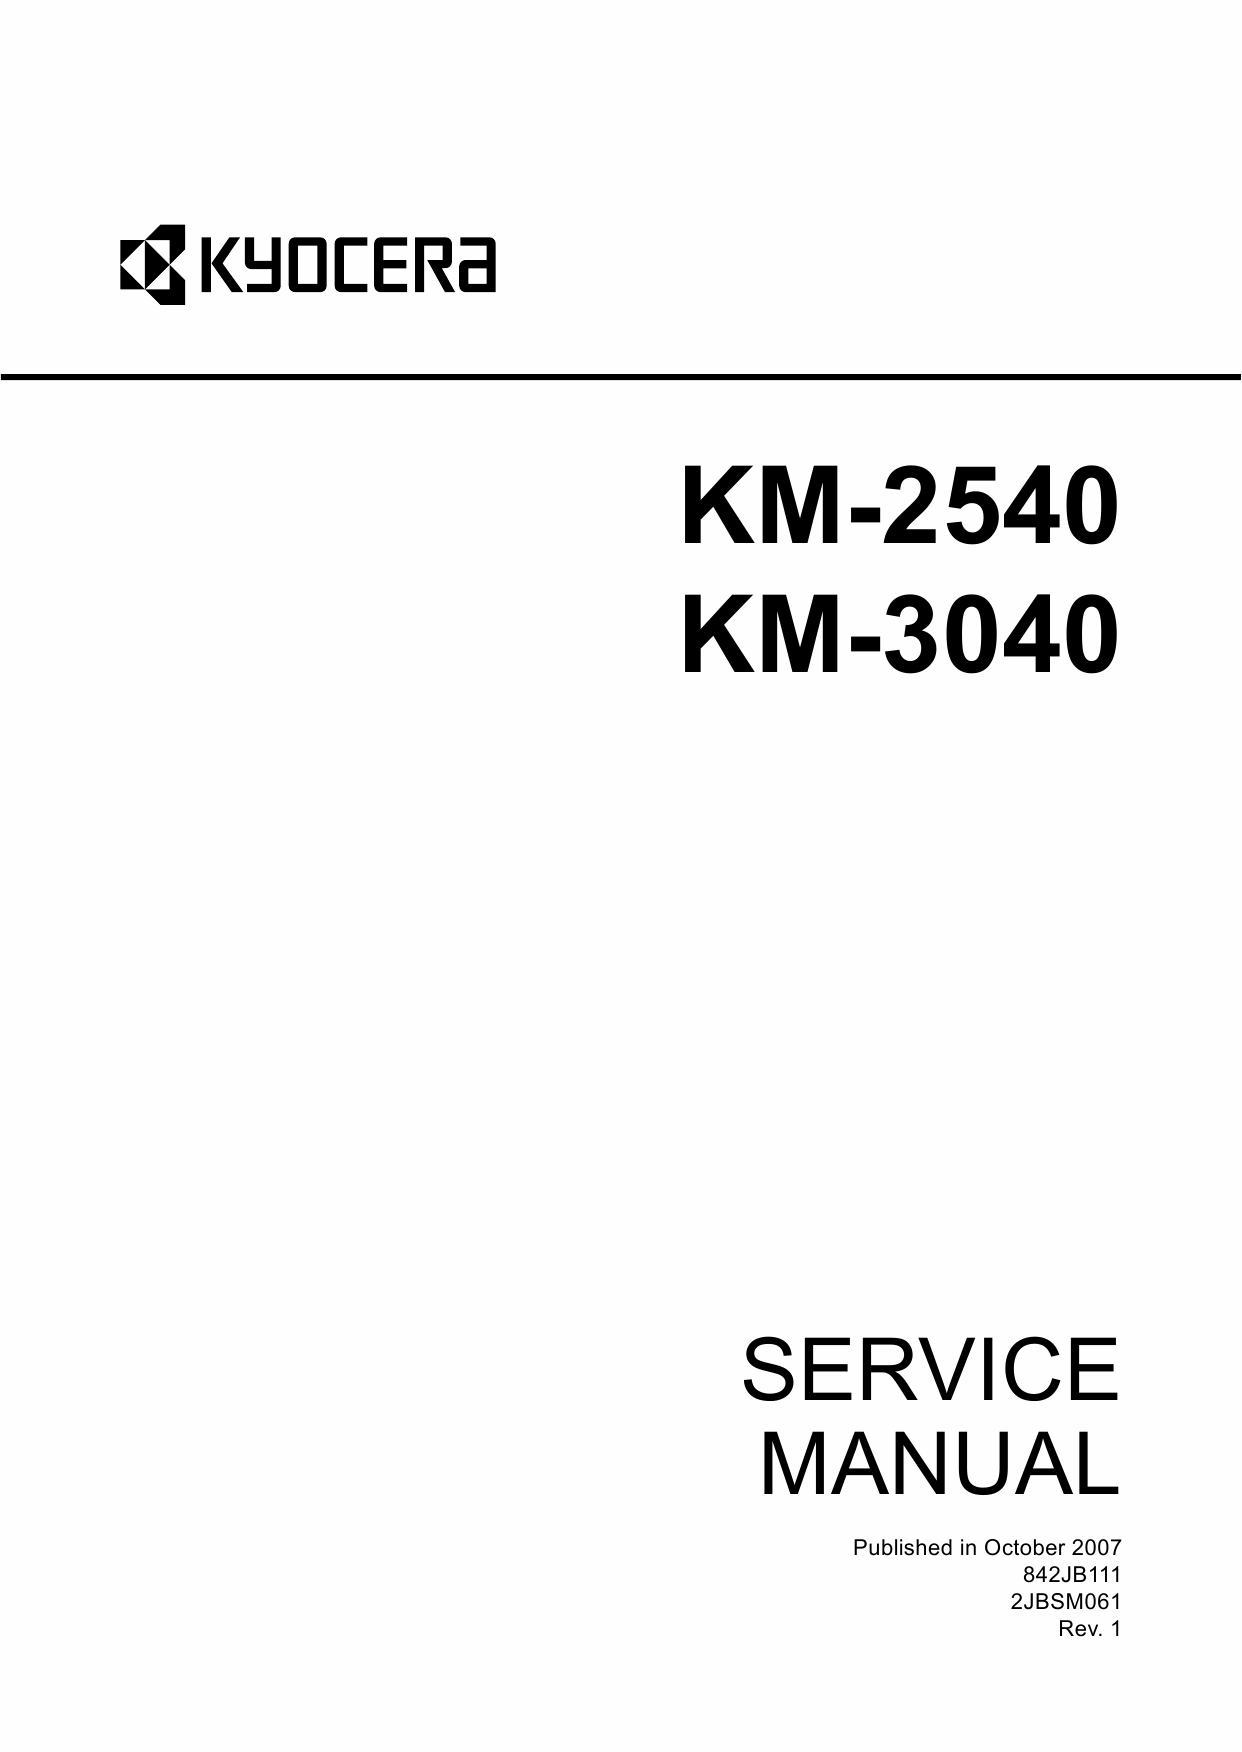 KYOCERA Copier KM-2540 3040 Service Manual-1